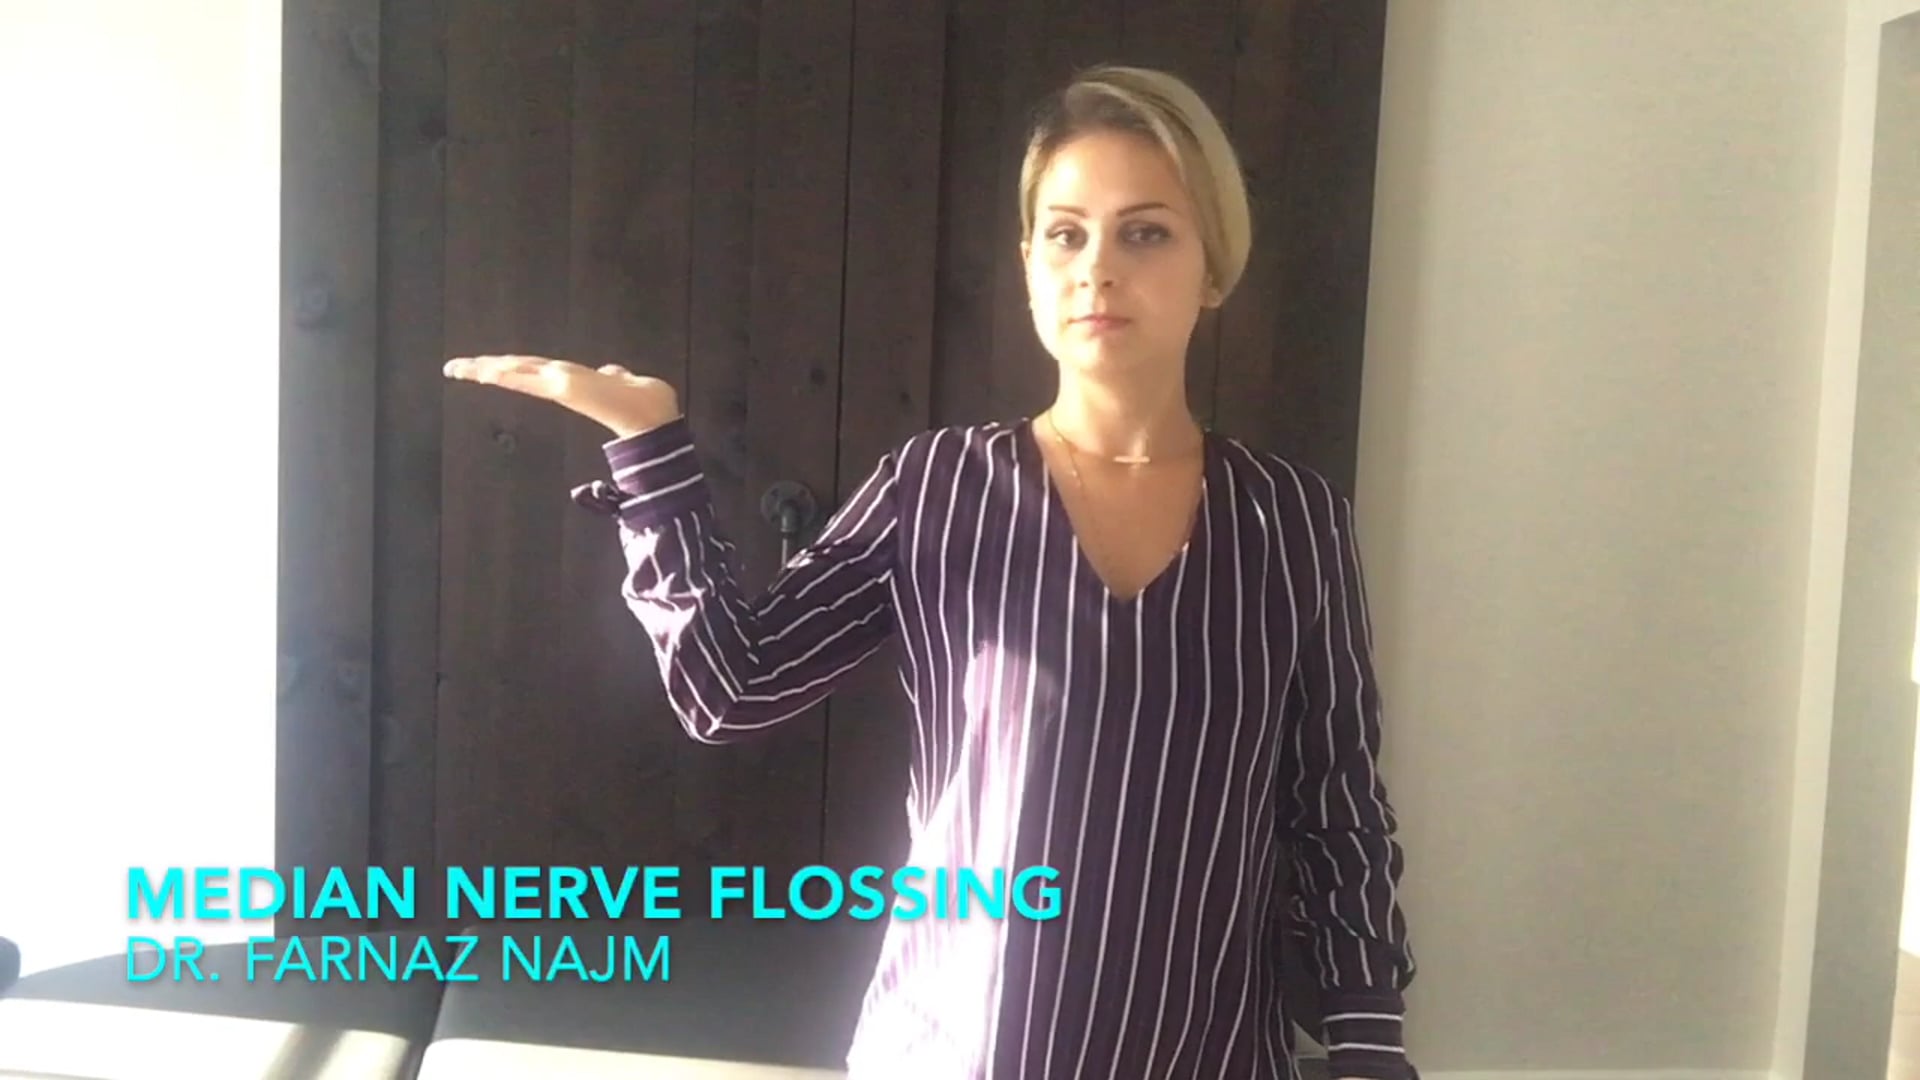 Median Nerve Flossing By Dr. Farnaz Najm